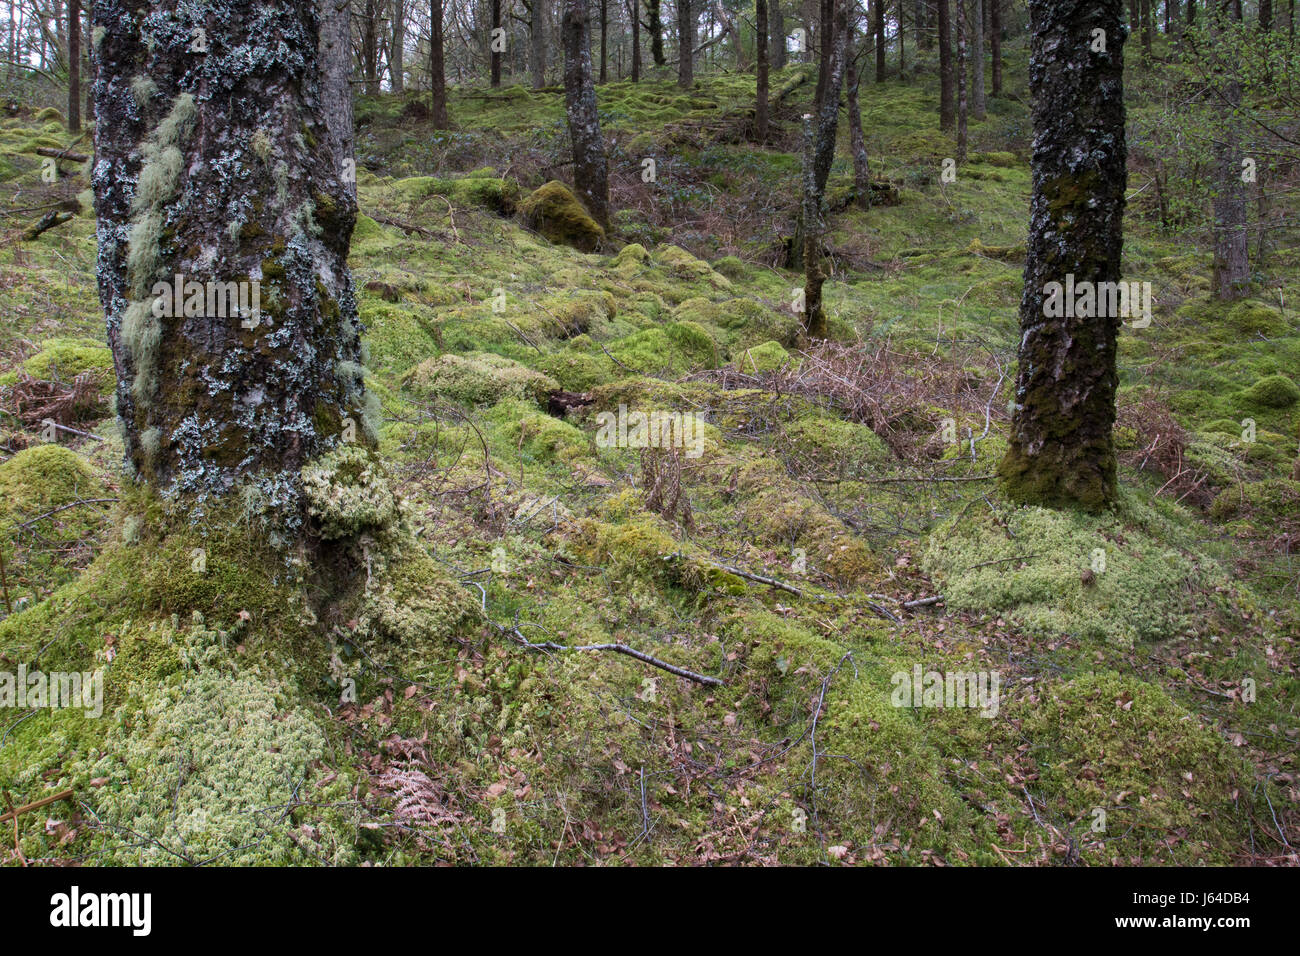 El sotobosque de musgo en un bosque templado caducifolio en el Parque Nacional de Snowdonia, Gales Foto de stock